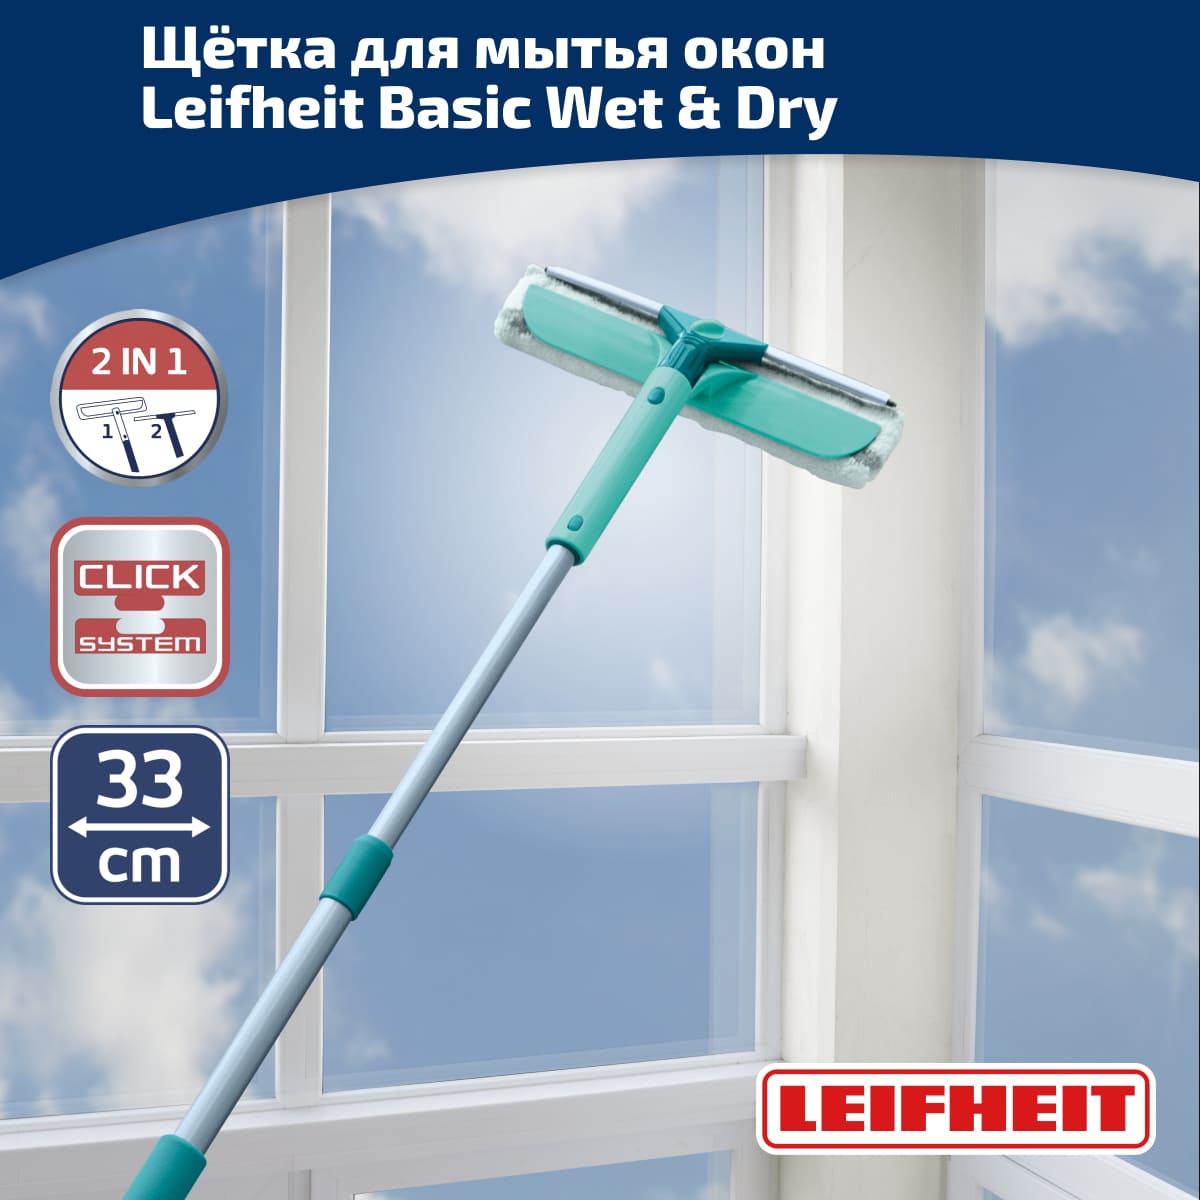 Щётка для мытья окон с губкой и телескопической ручкой, 75-135см, Leifheit Basic Wet & Dry Leifheit 55238, цвет зеленый